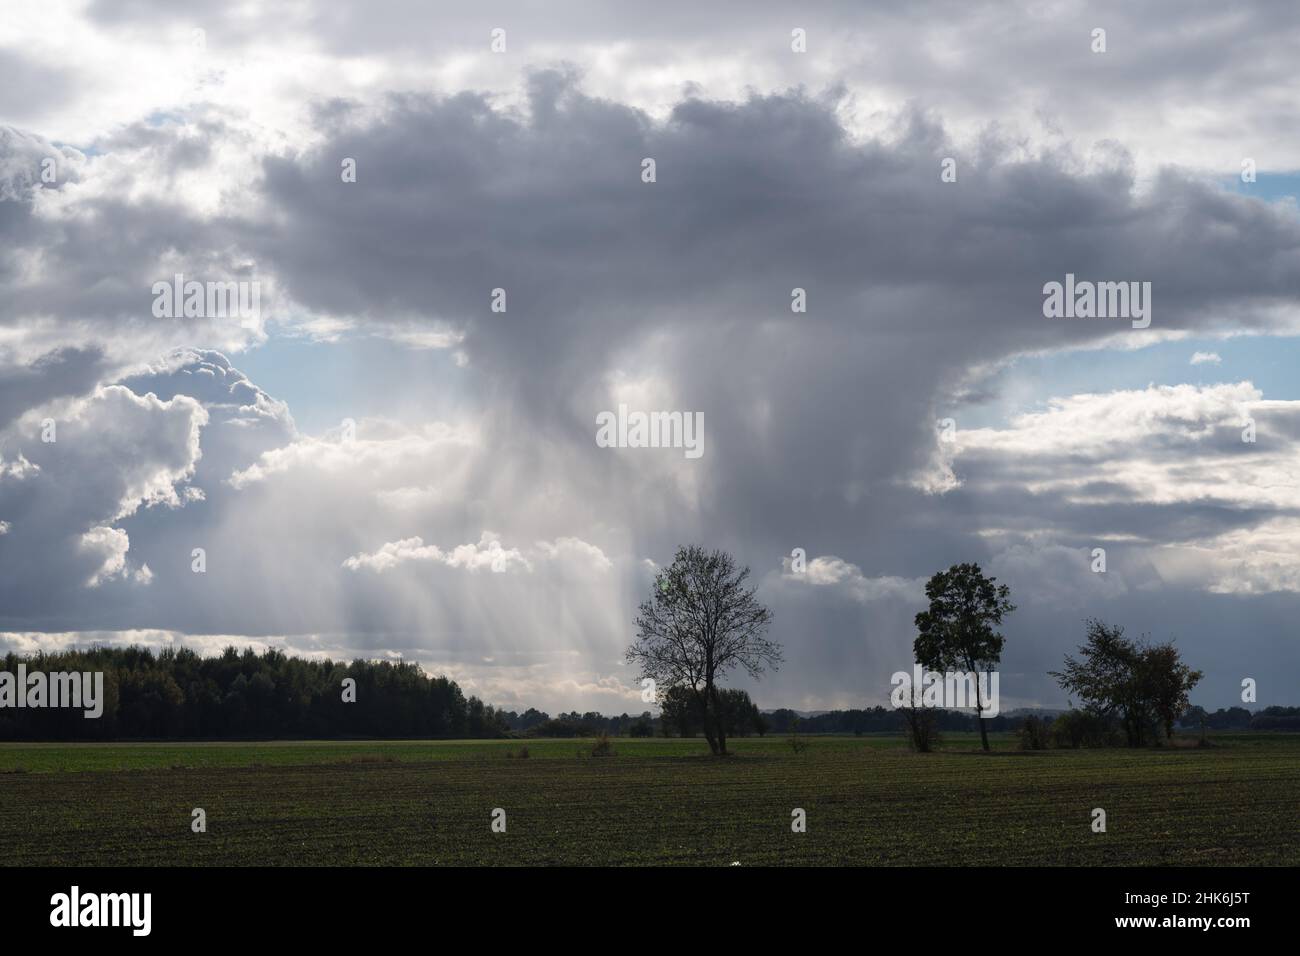 Clouds in Poland © Wojciech Strozyk / Alamy Stock Photo *** Local Caption *** Stock Photo